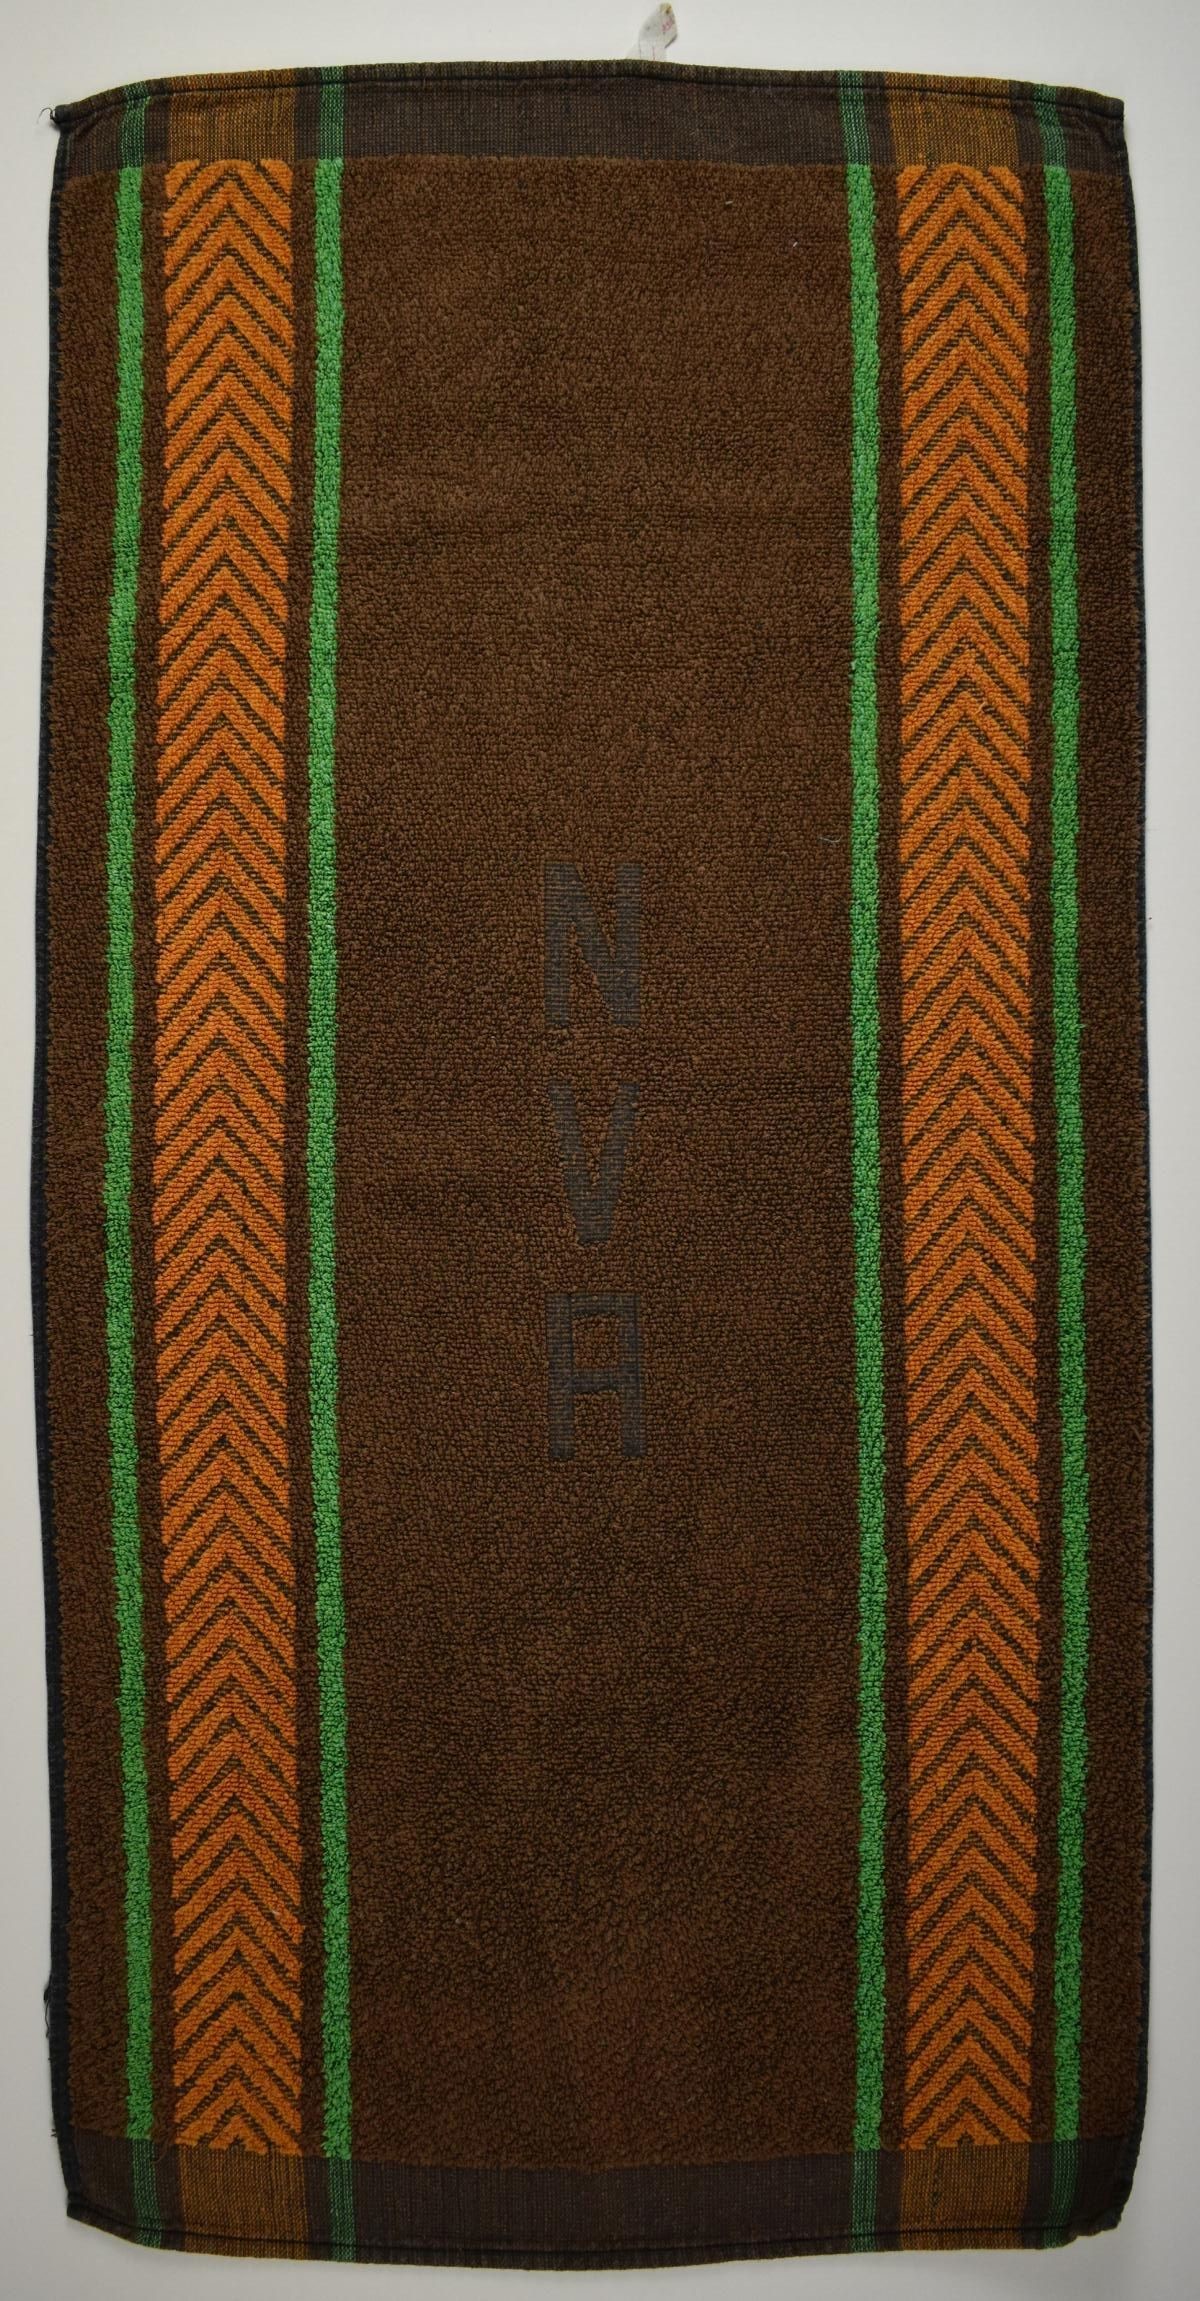 Handtuch "NVA" (Deutsches Damast- und Frottiermuseum CC BY-NC-ND)